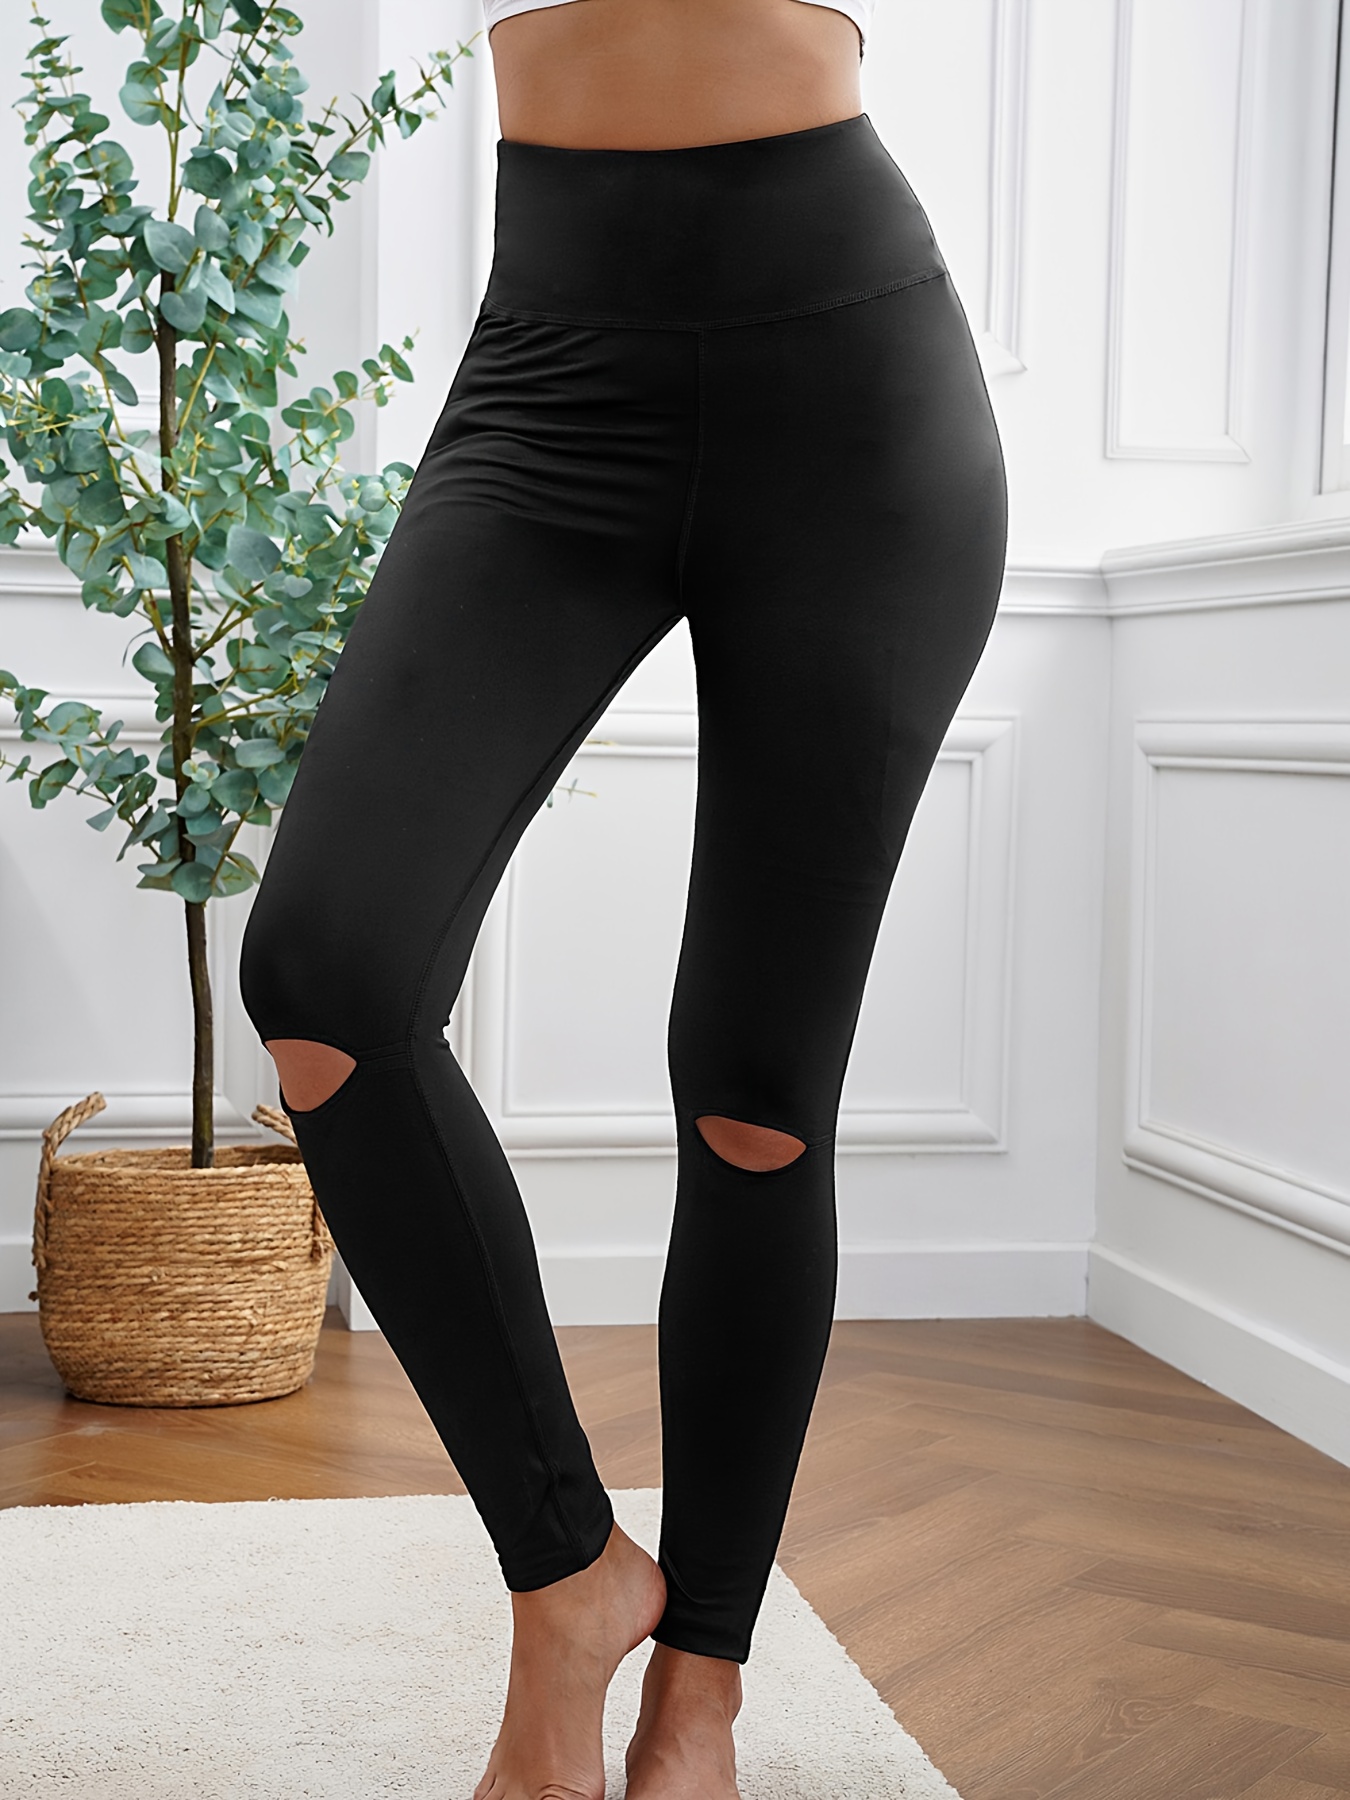 Black Stretchable Plain Leggings For Women